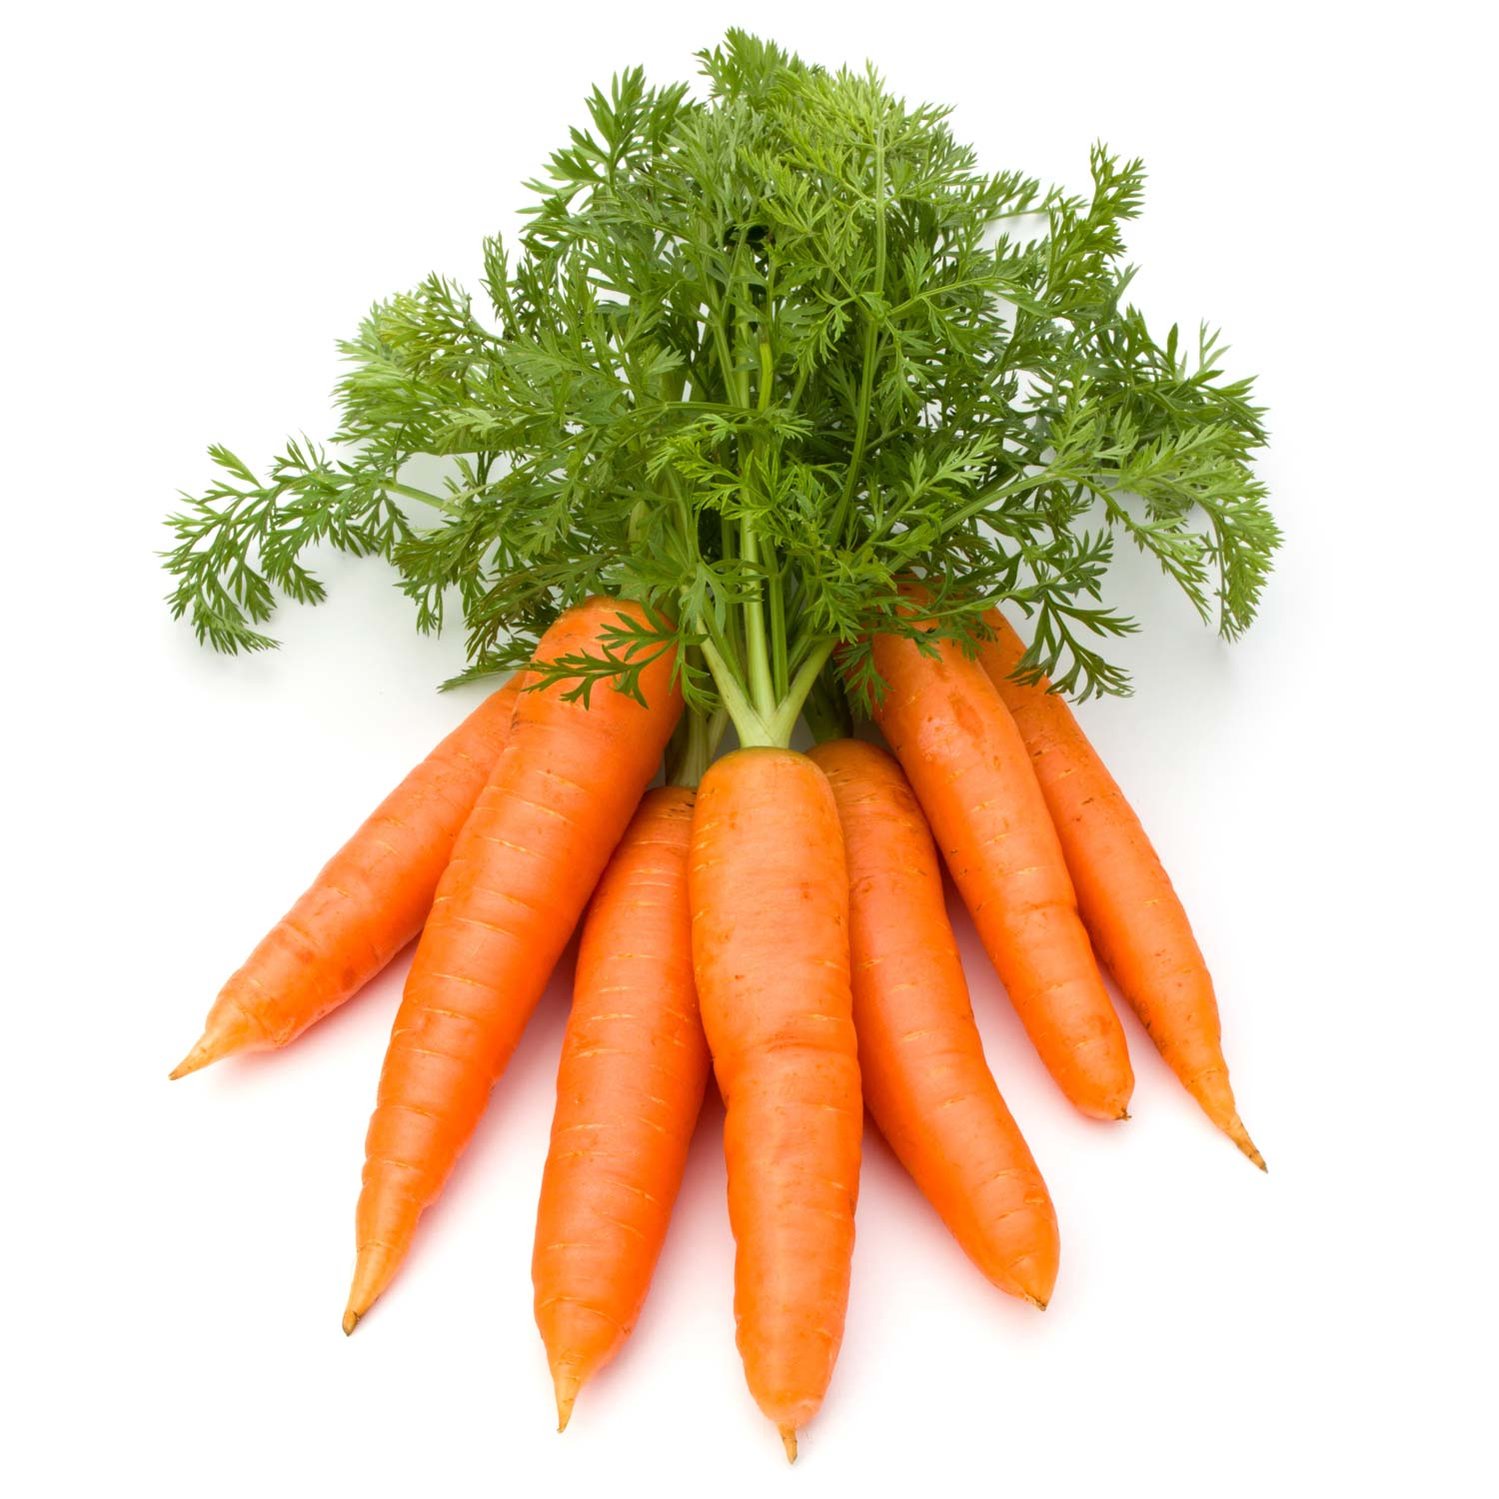 Ein Bund Karotten auf weißem Untergrund